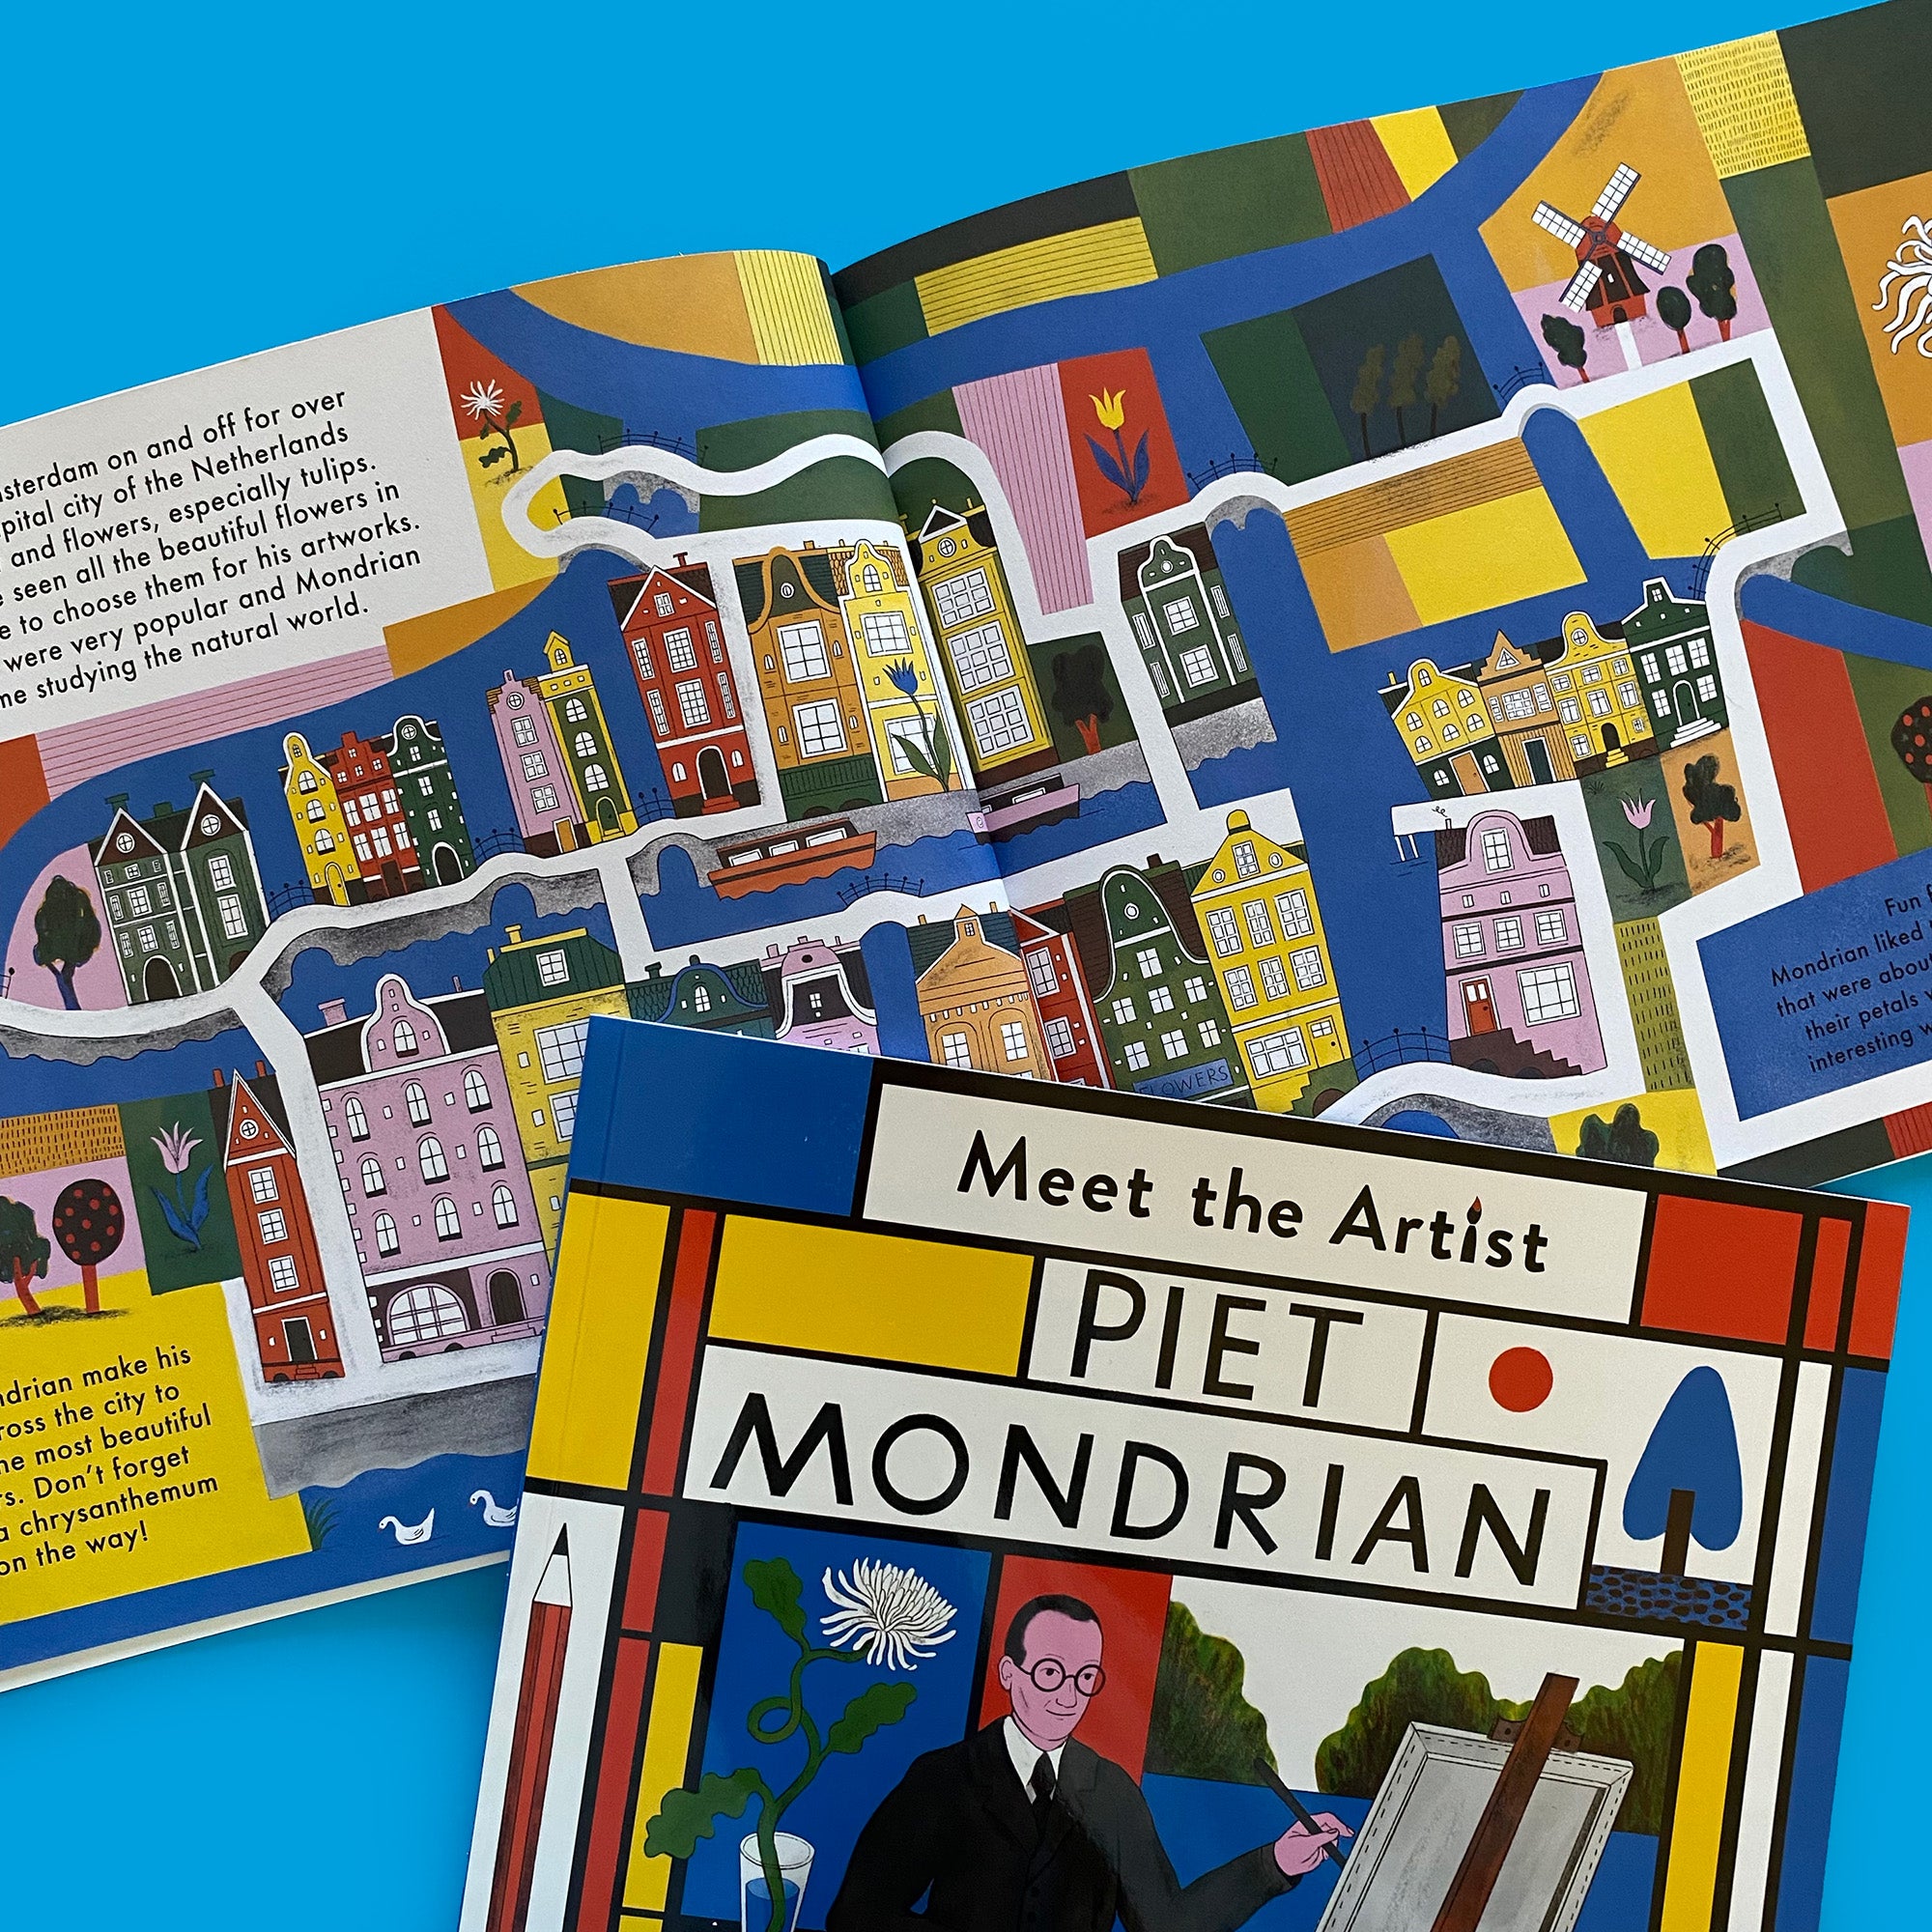 Meet the Artist: Piet Mondrian activity book